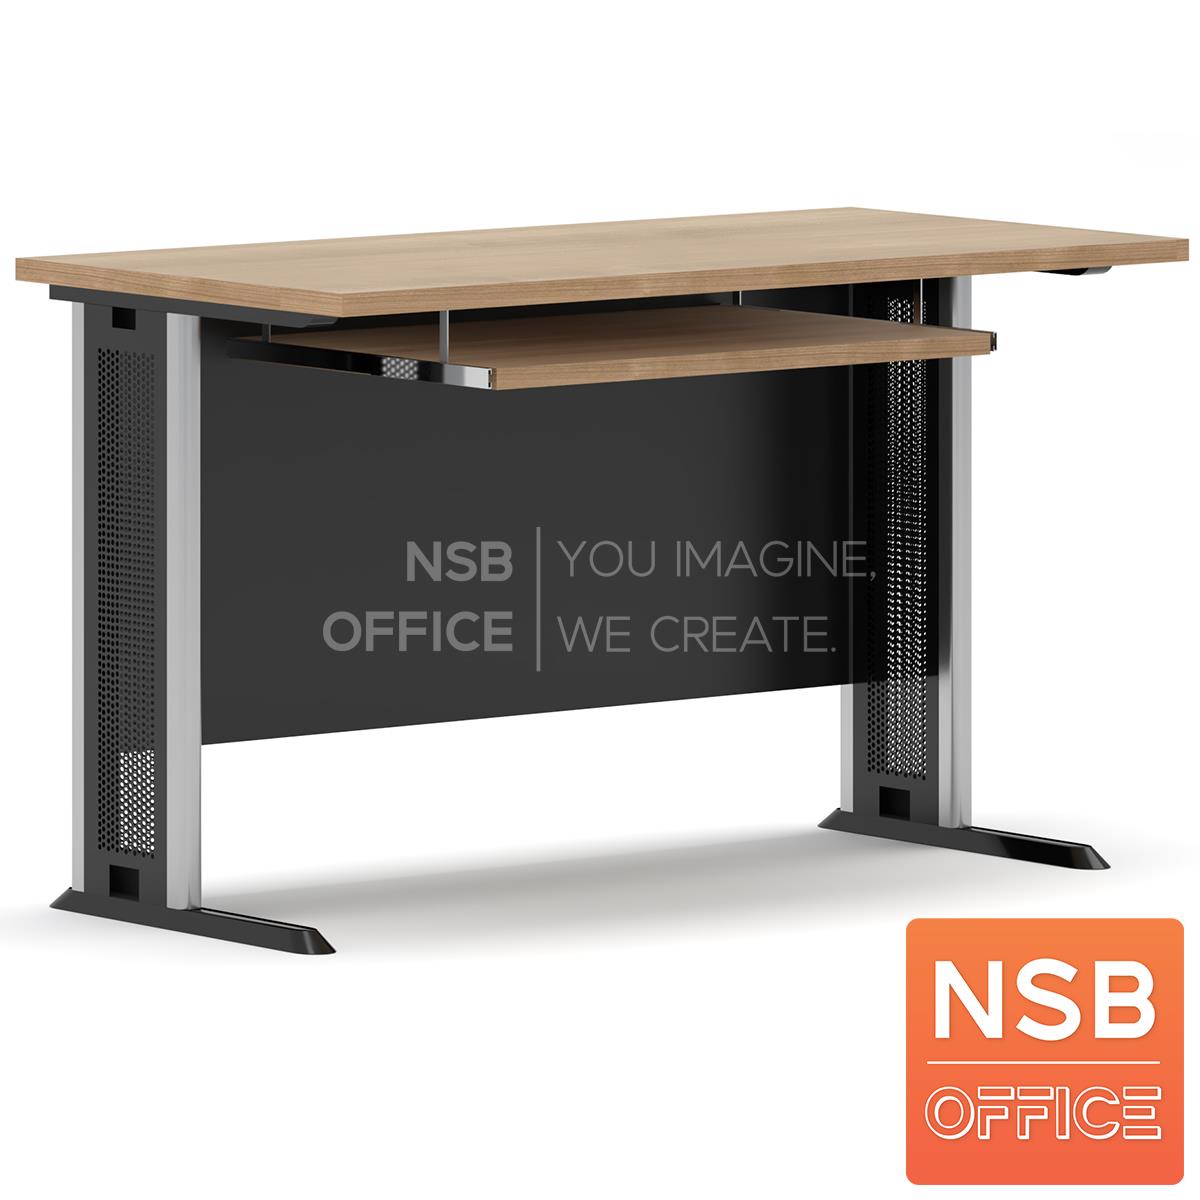 โต๊ะทำงาน บังโป๊ไม้ รุ่น Novem (โนเวม) ขนาด 60D, 75D, 80D cm. ขาเหล็กตัวแอล พร้อมรางคีย์บอร์ด